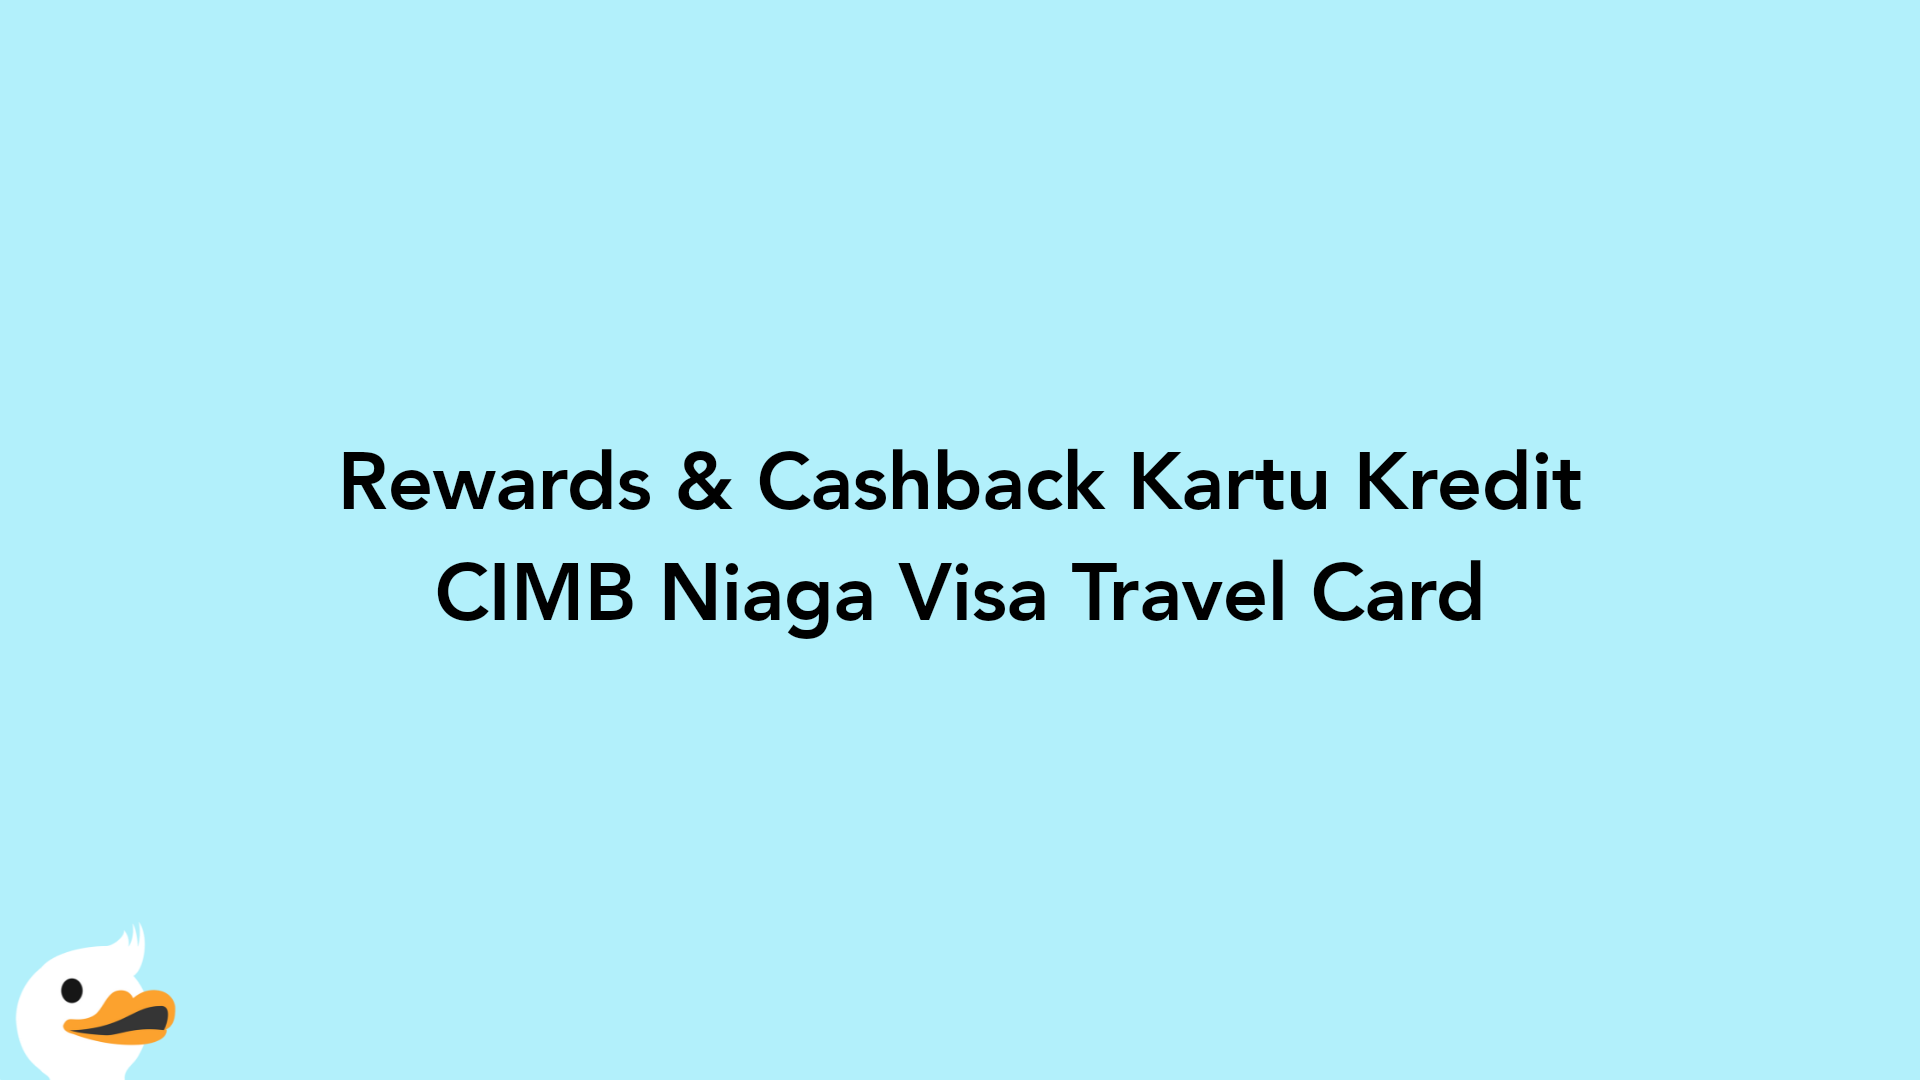 Rewards & Cashback Kartu Kredit CIMB Niaga Visa Travel Card